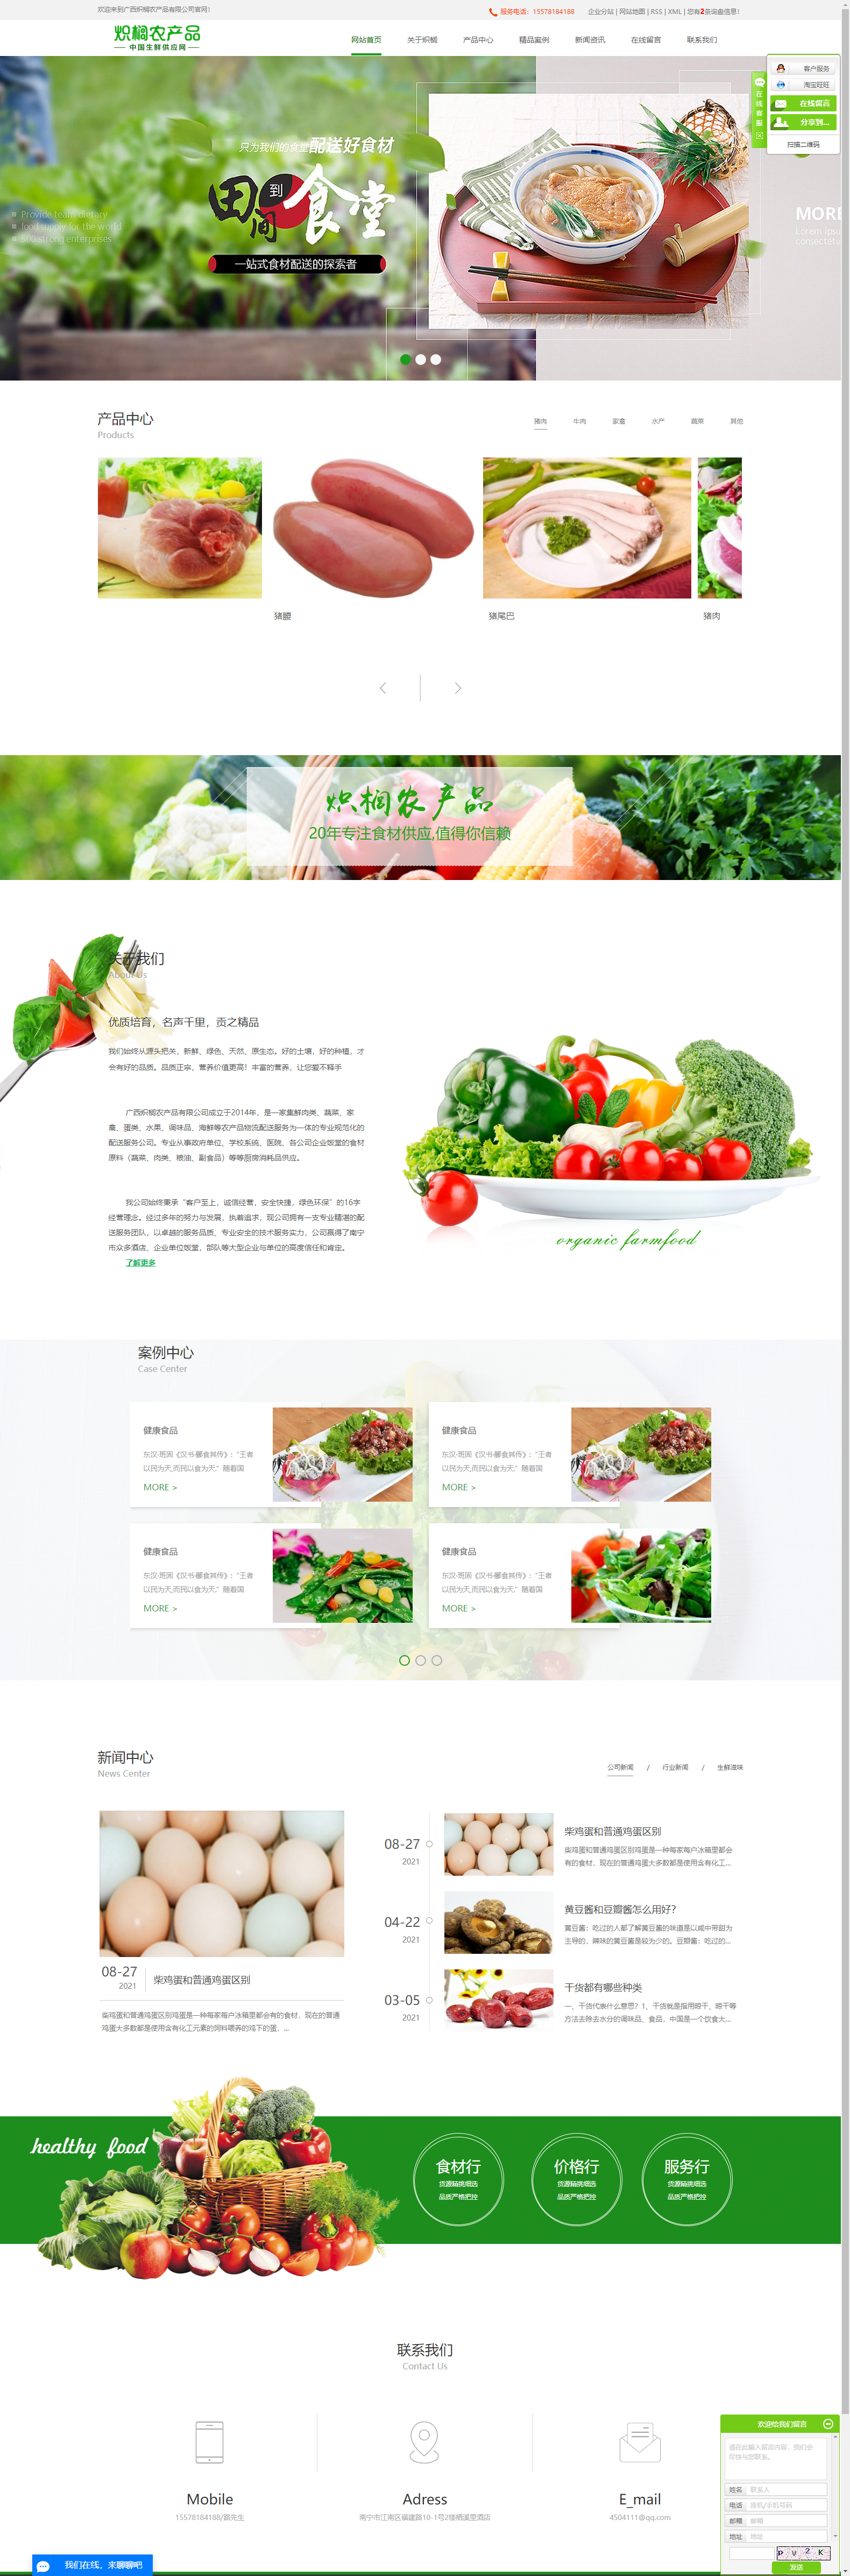 广西炽榈农产品有限公司网站案例